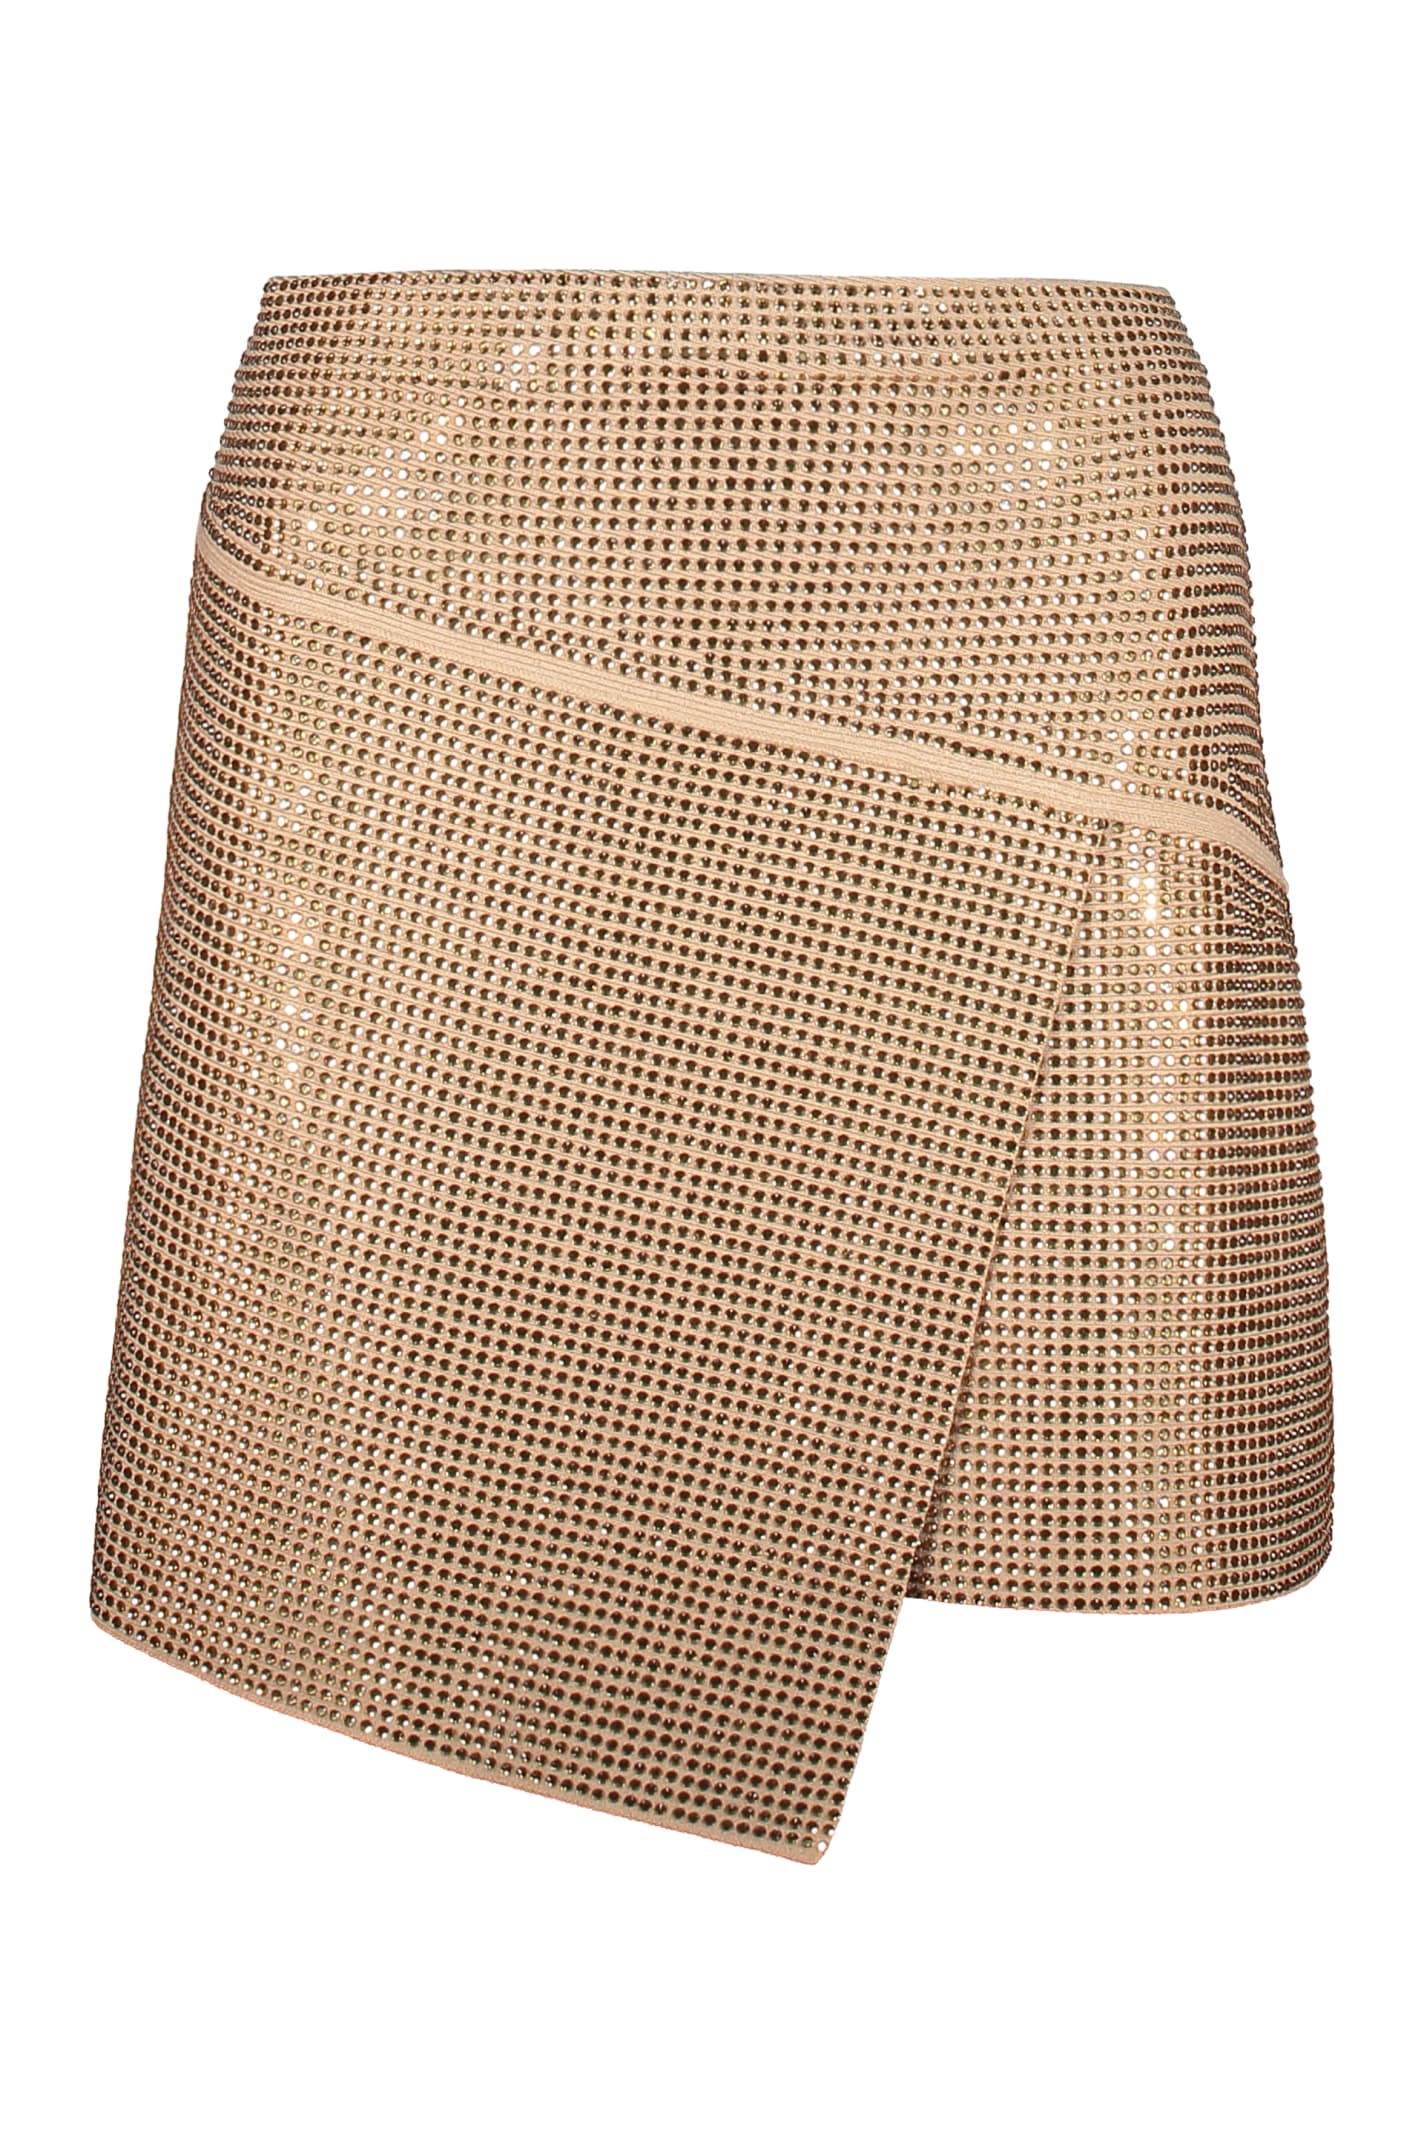 ANDREĀDAMO Asymmetric Miniskirt